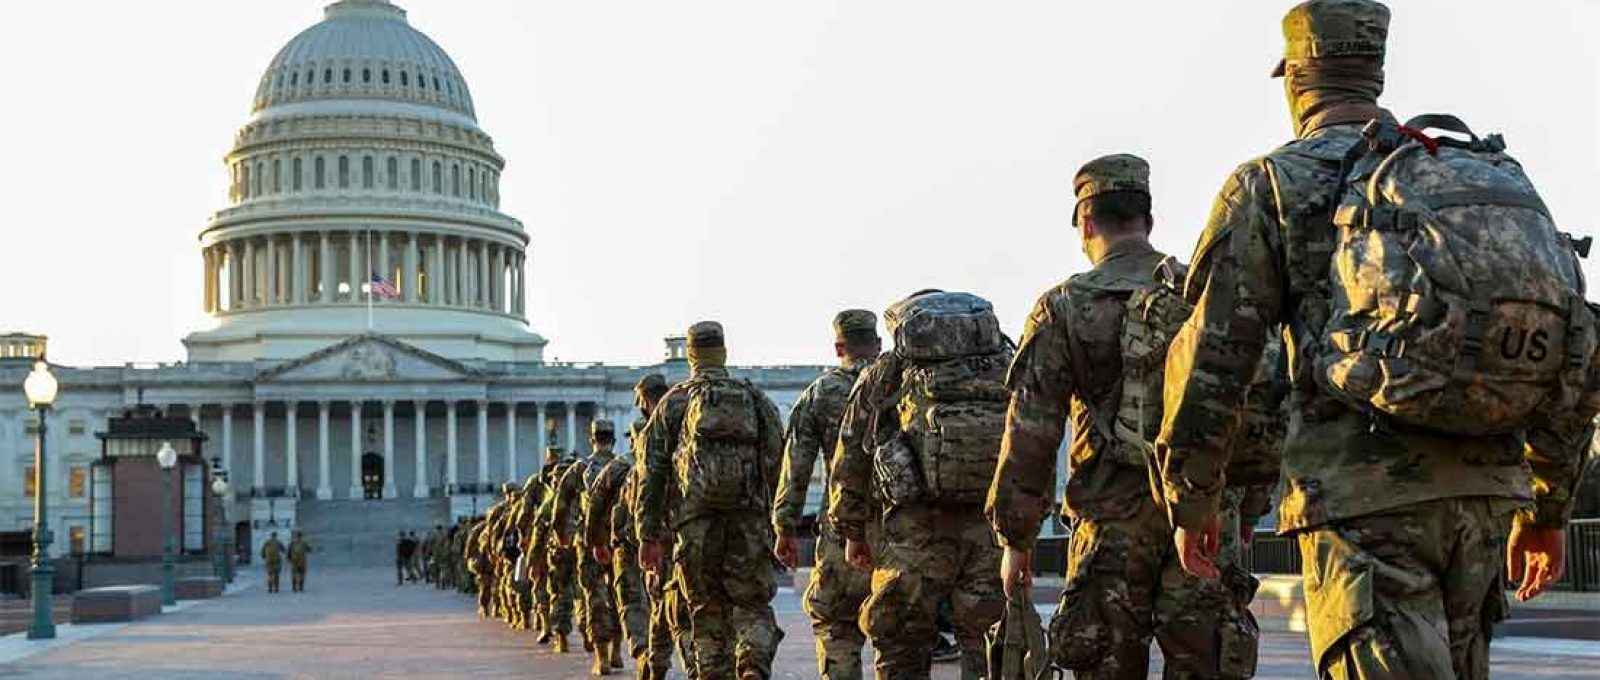 Membros da Guarda Nacional chegam ao Capitólio dos EUA em 12 de janeiro de 2021, em Washington (Foto: Tasos Katopodis/Getty Images).